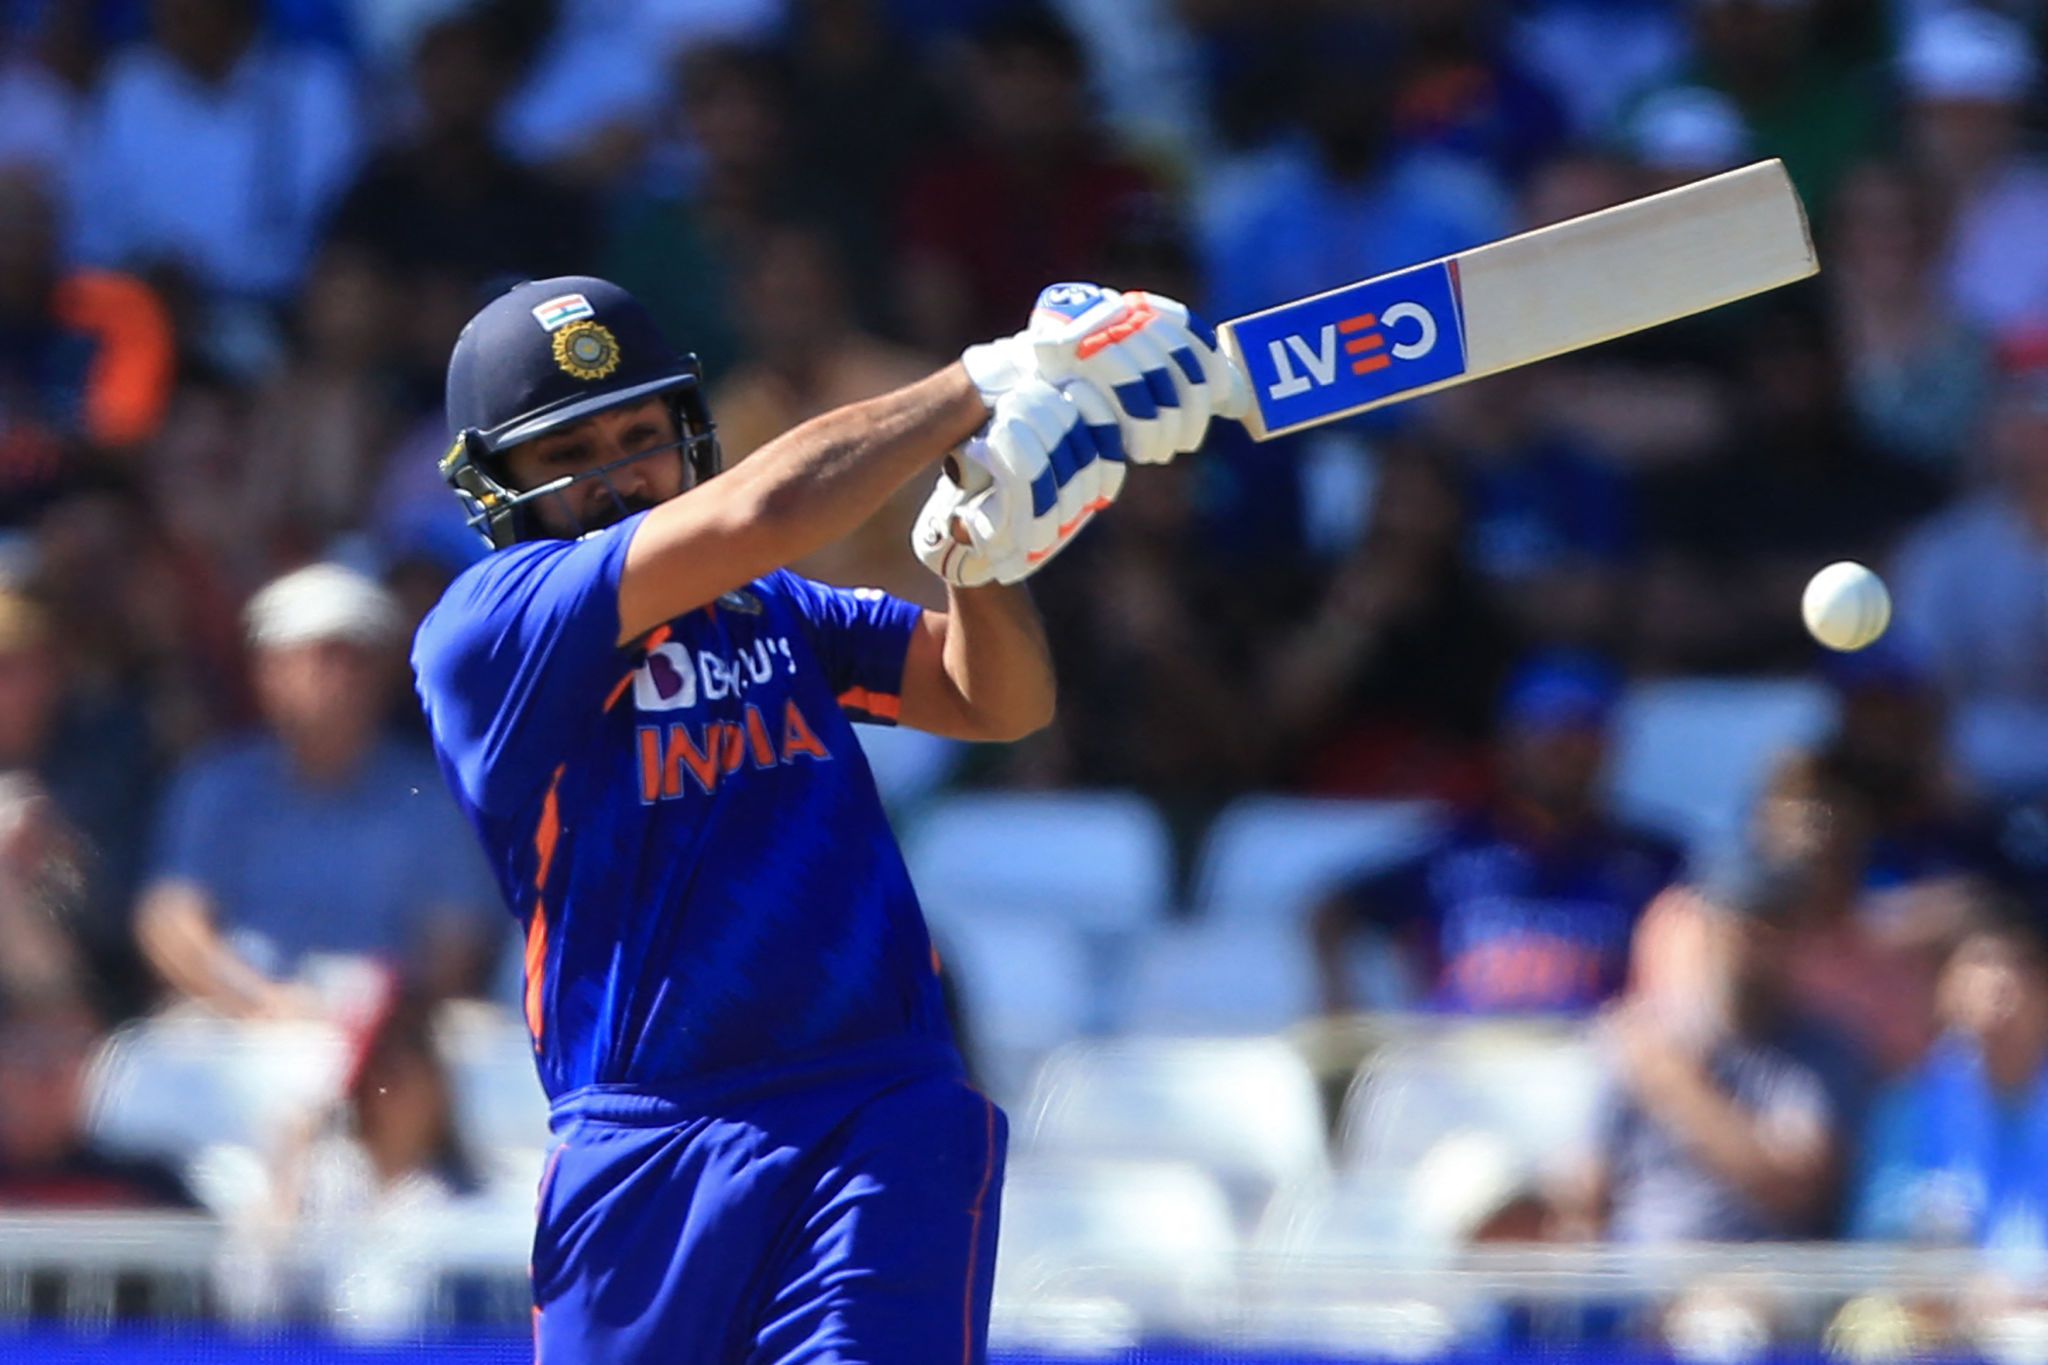 वेस्टइंडीज के खिलाफ पहले टी20 में जीत के बावजूद नाखुश हैं कप्तान रोहित शर्मा, बल्लेबाजों को सुनाई खरी-खोटी